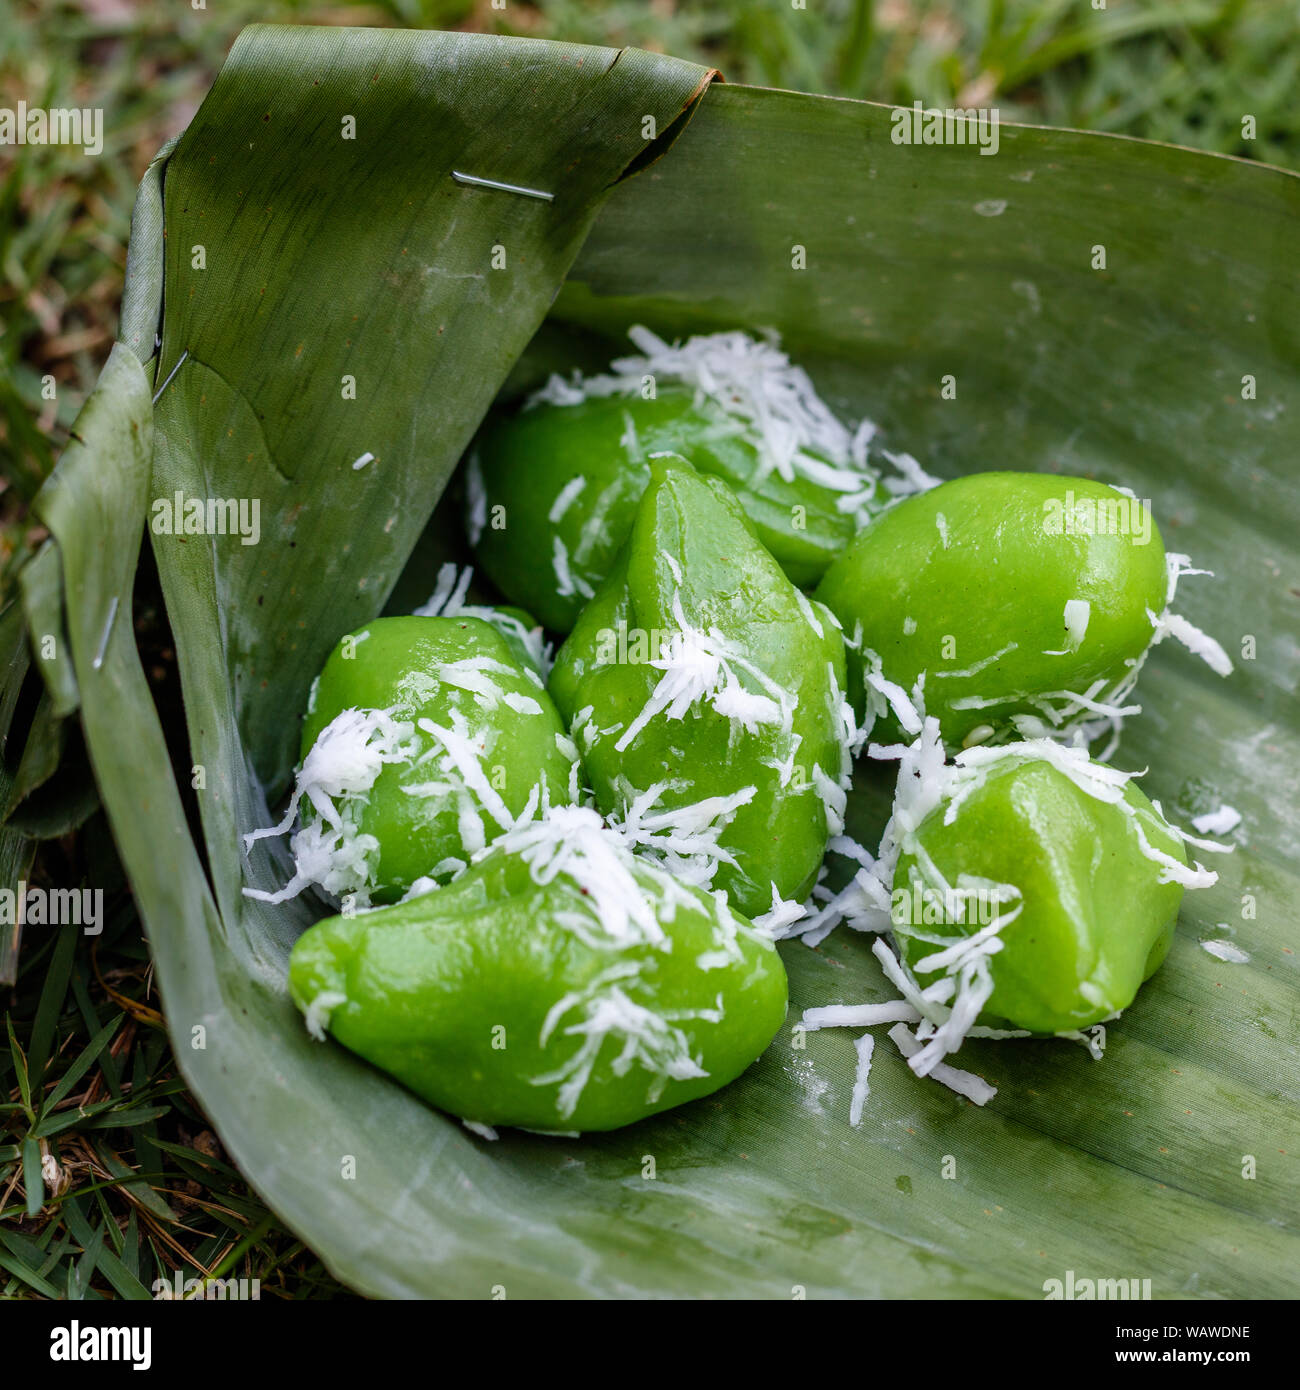 Klepon (kelepon) - riso appiccicoso sfere caramellato con lo zucchero di cocco in foglia di banano, Indonesiano tradizionale dessert, cibo di strada. Bali, Indonesia Foto Stock